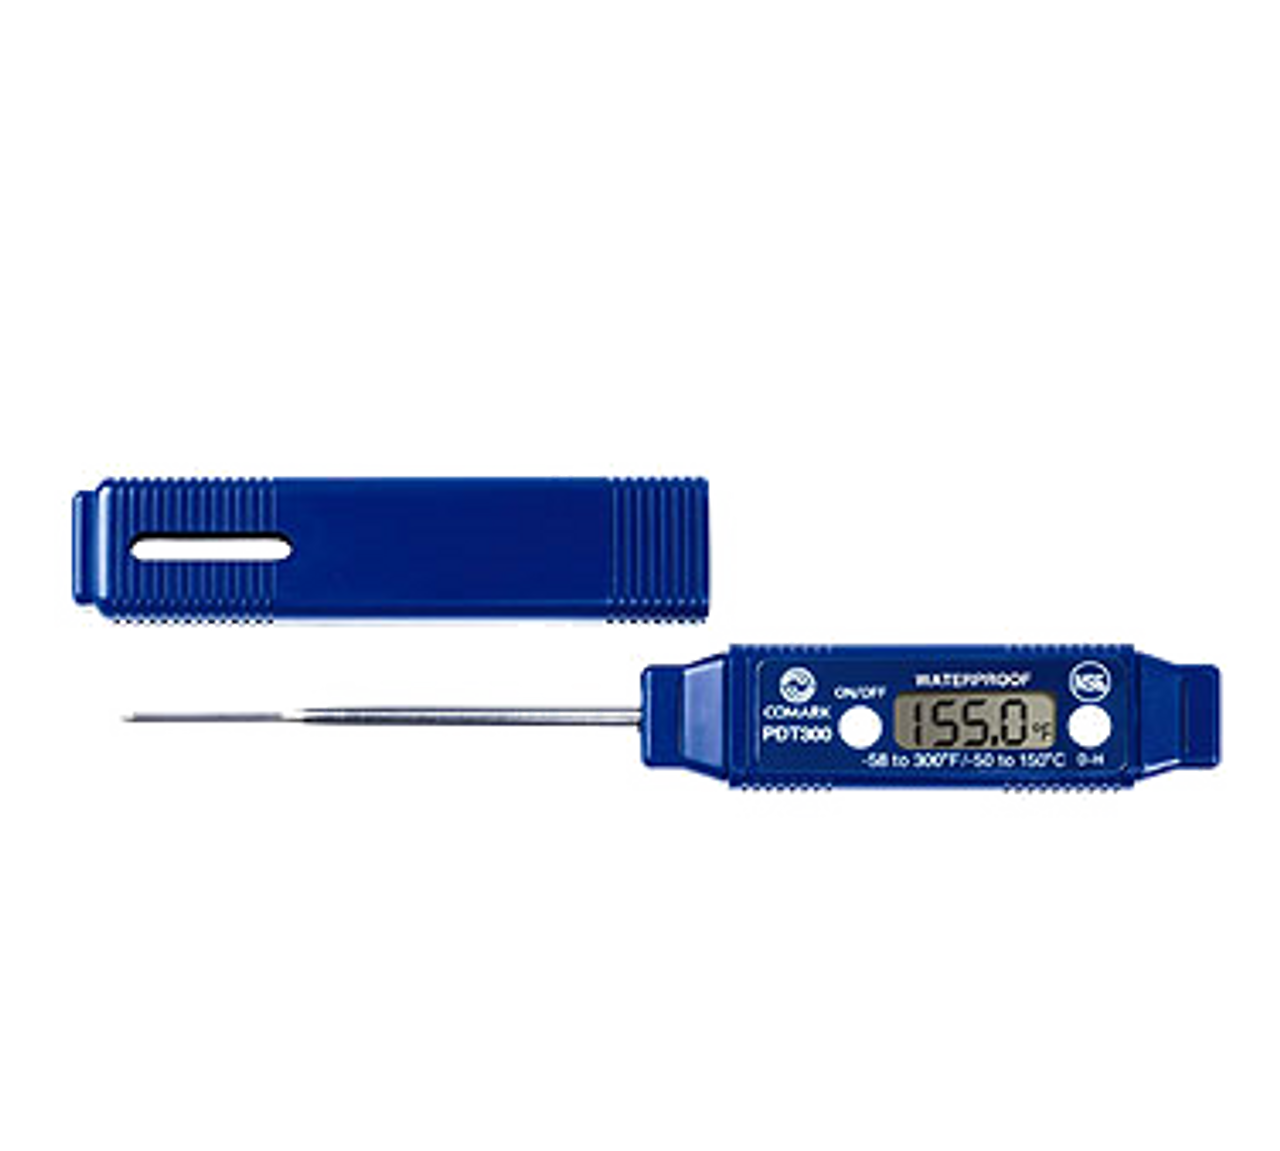 Comark KM14 5 in. Dishwasher Digital Pocket Thermometer 